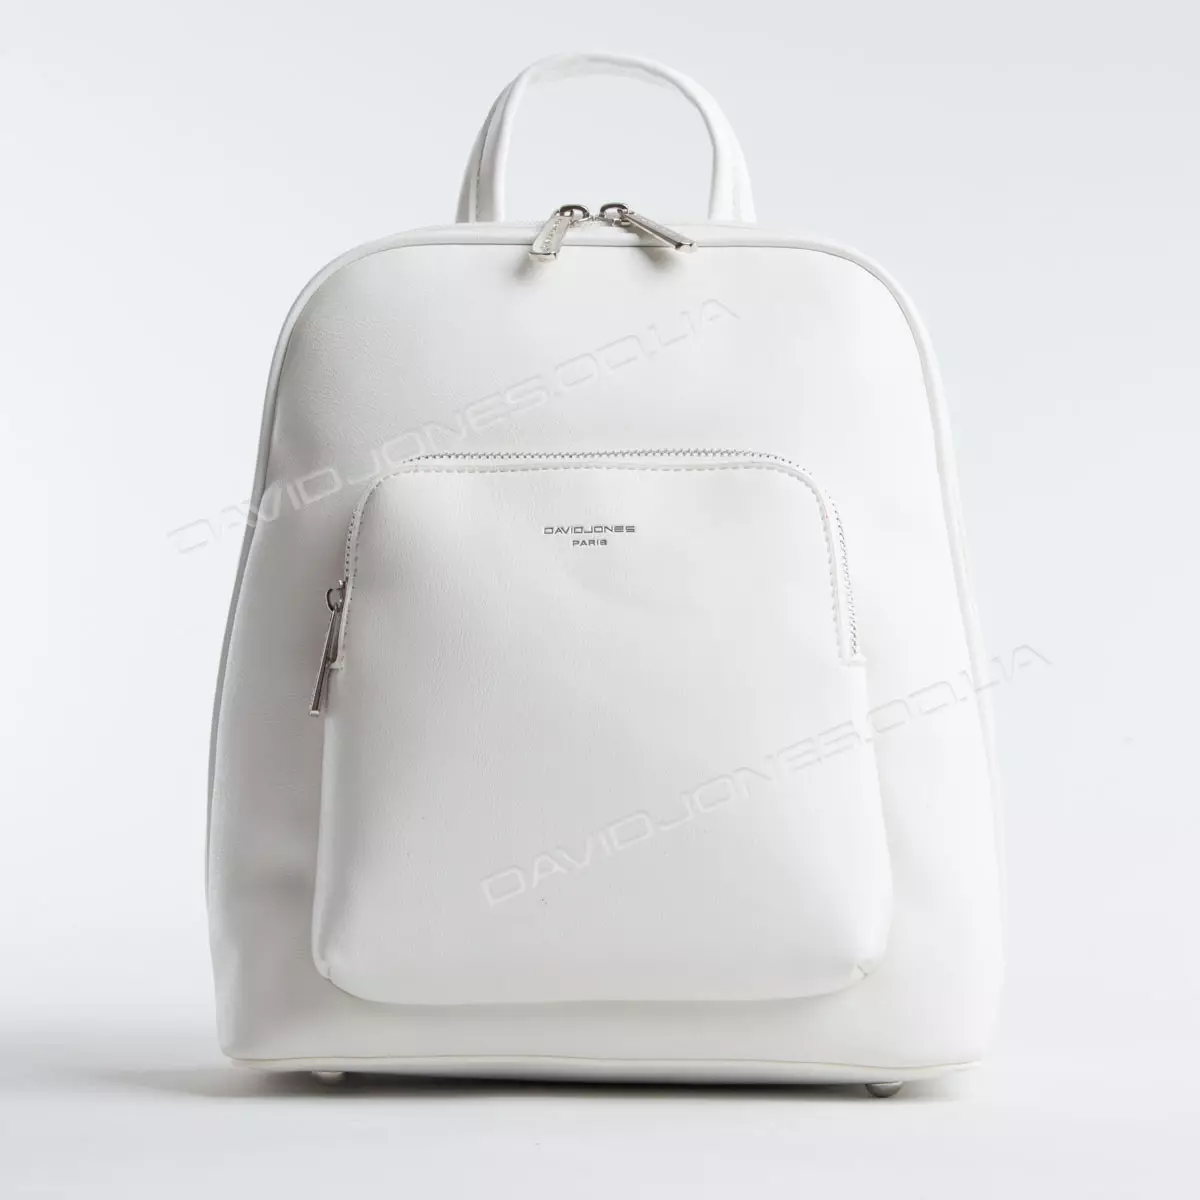 Backpacks bardhë: Çfarë duhet të veshin backpacks pak dhe të mëdha të bardha të grave? Çanta të bukura të shpinës për vajzat dhe modele të tjera me stil 2549_22